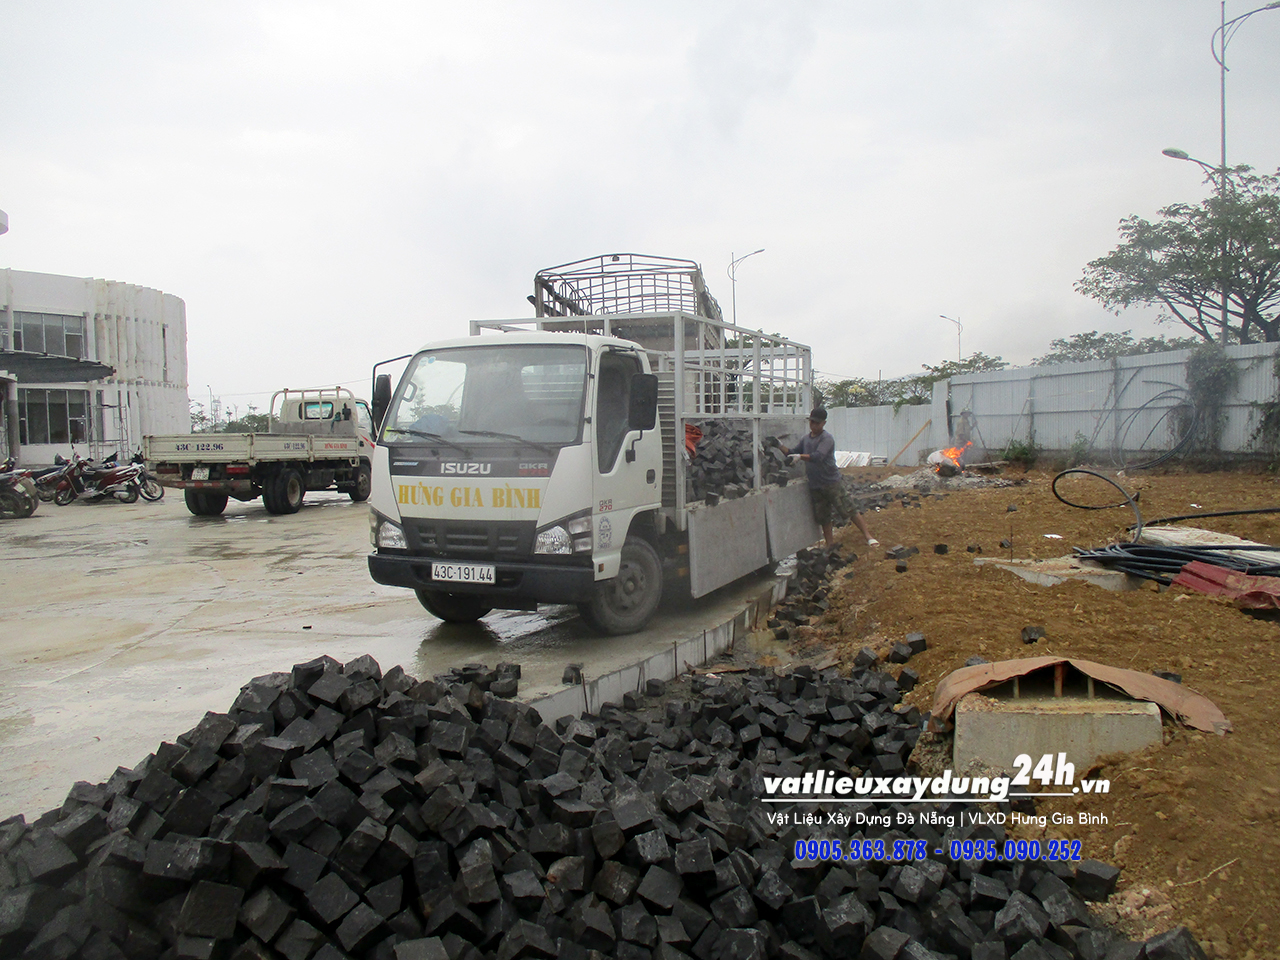 Hưng Gia Bình - Nhà cung cấp đá tự nhiên cubic đen 10x10x8 tại Đà Nẵng